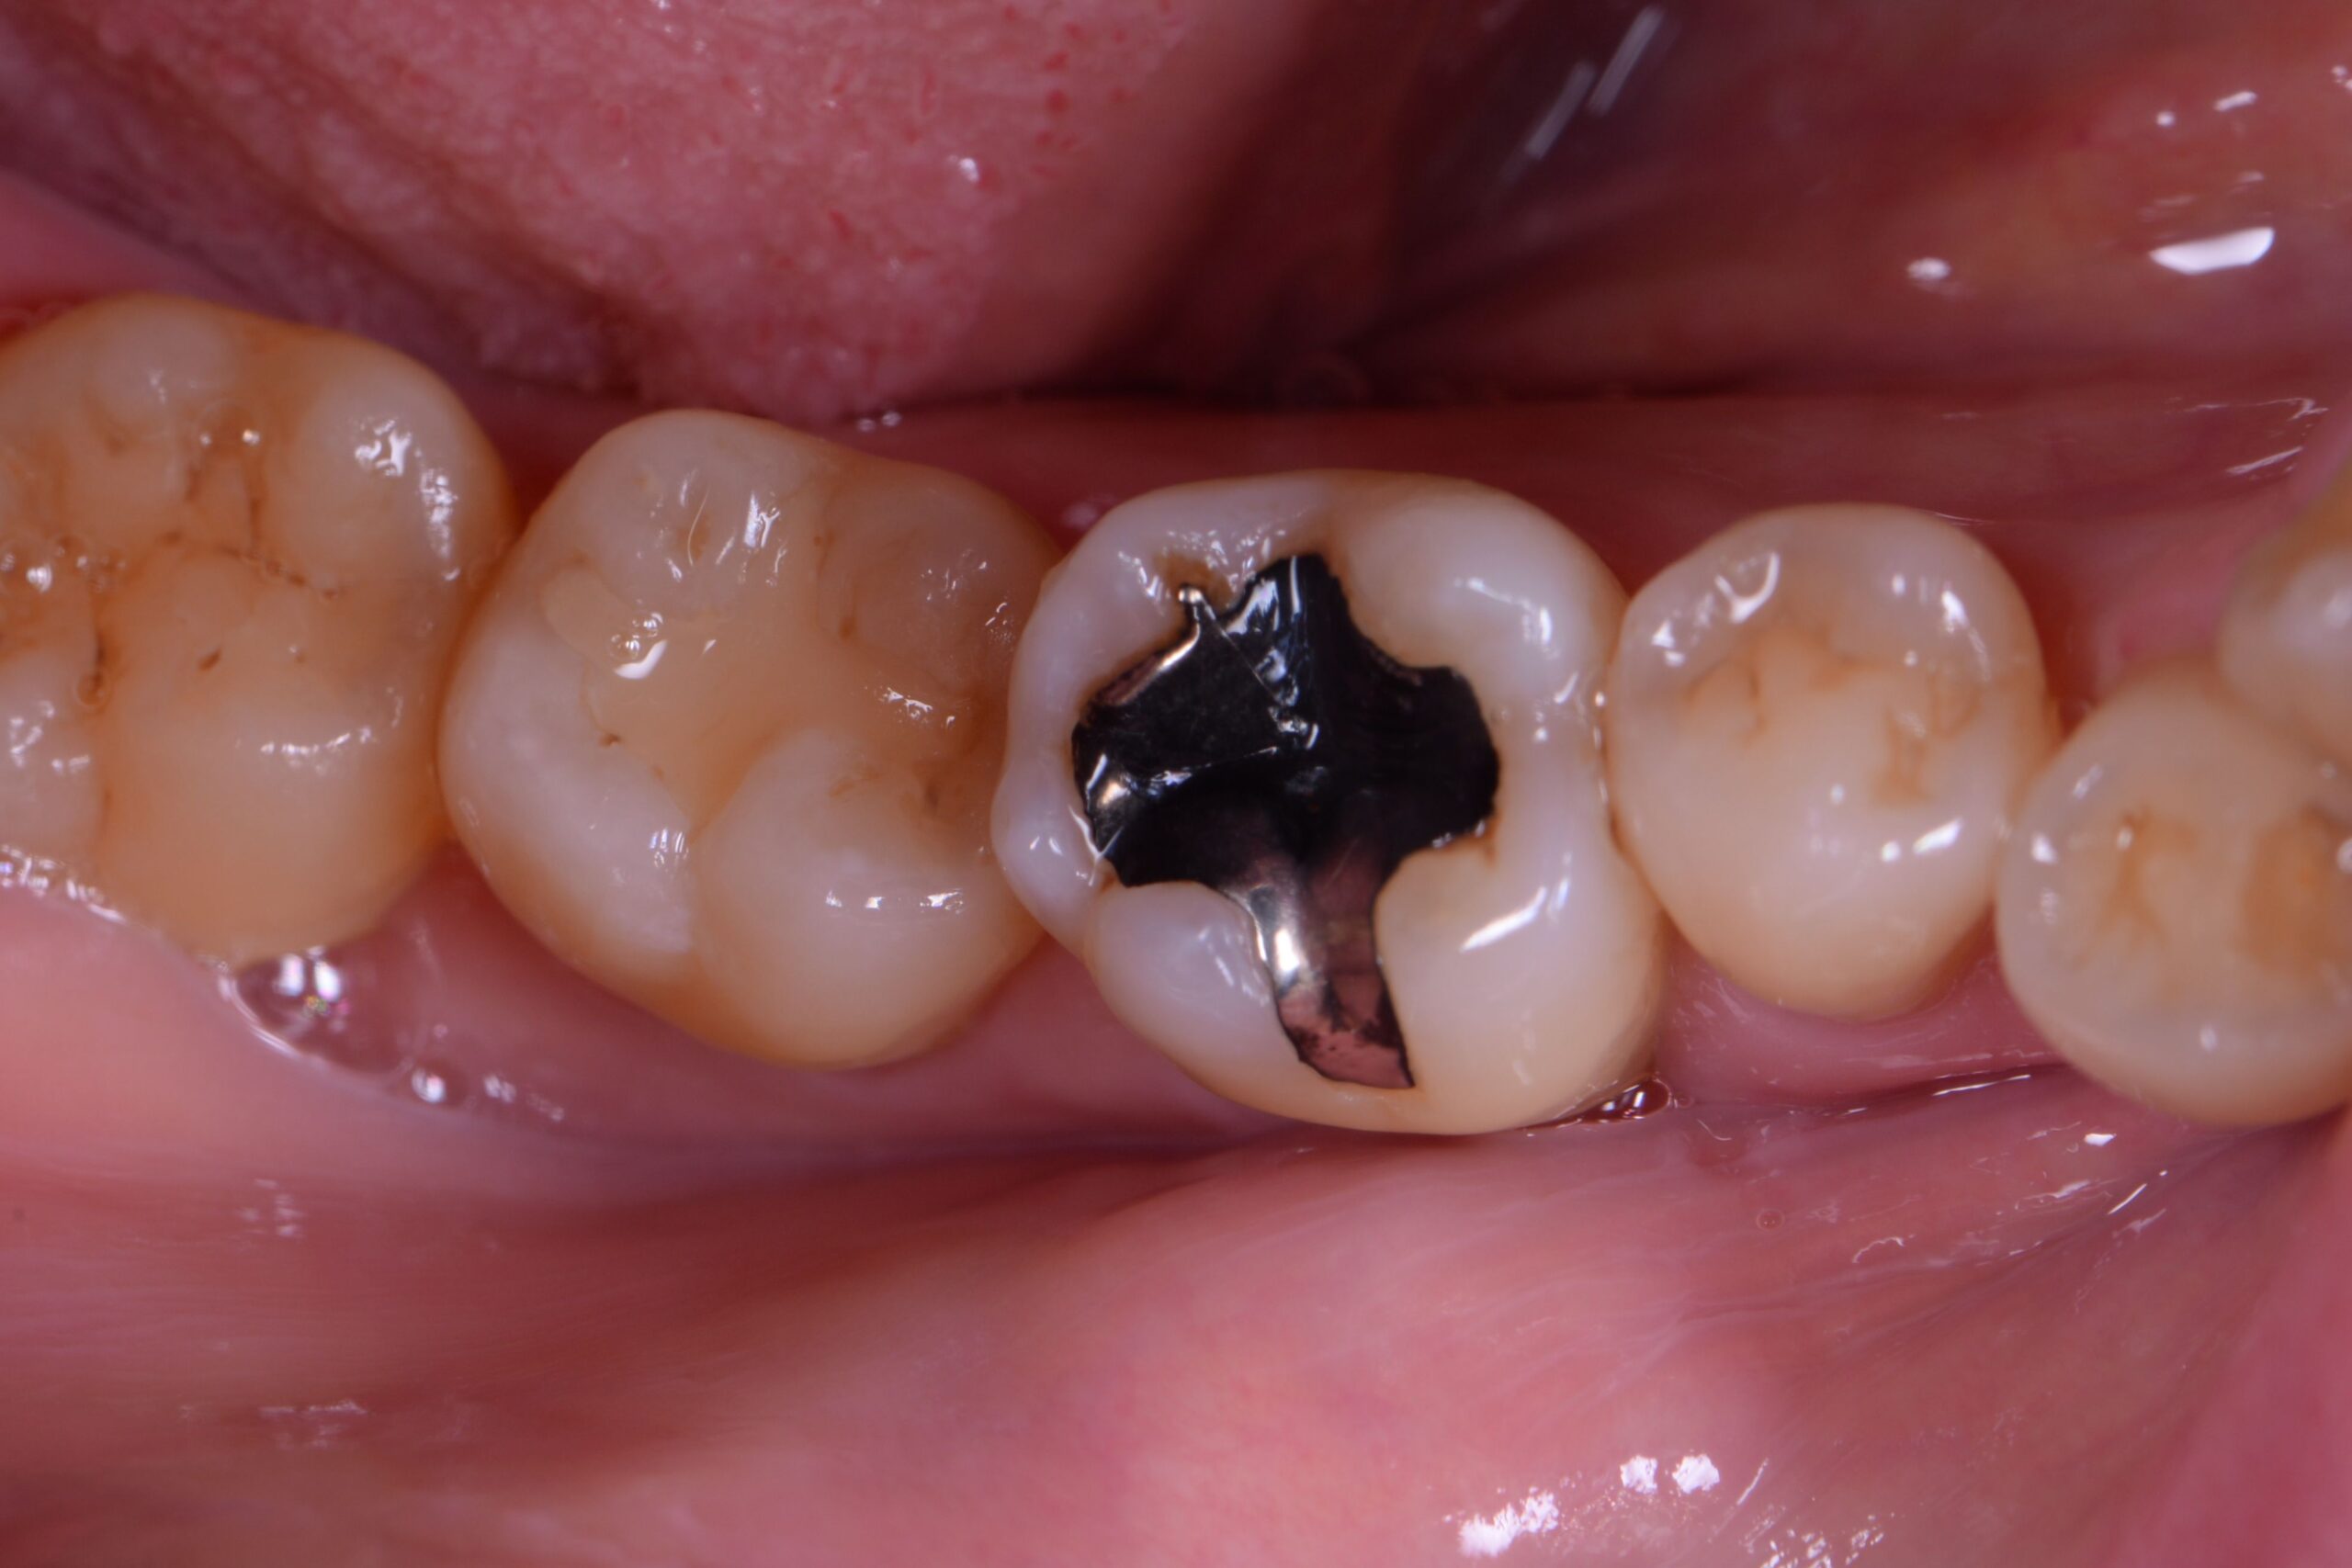 術前の状態・銀歯の下が虫歯になっている